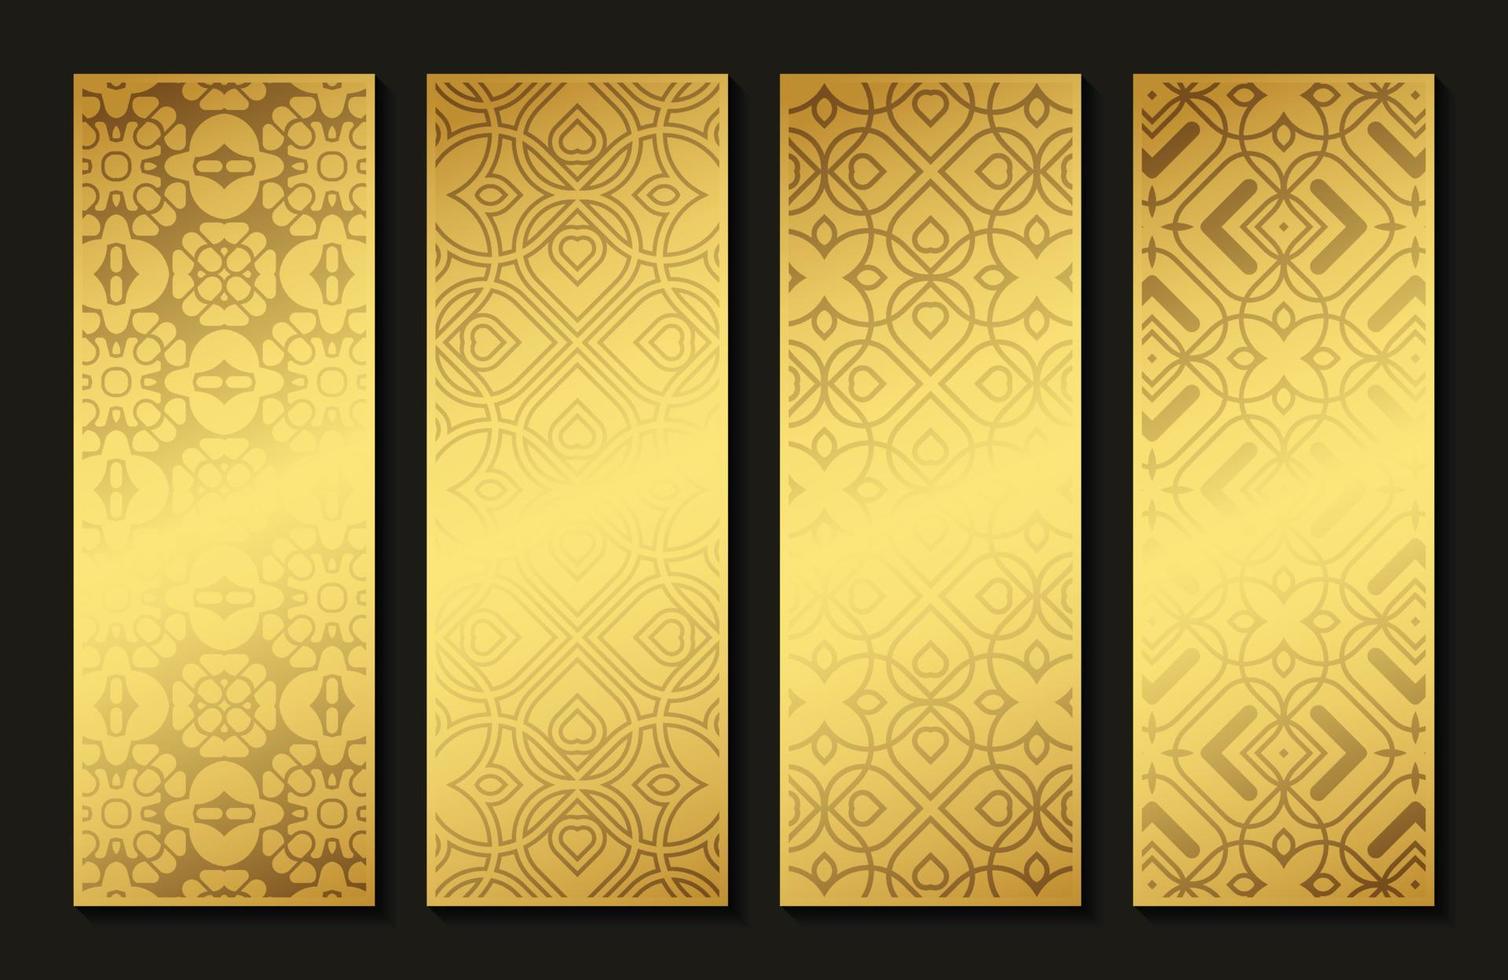 elegante tarjeta vertical de patrón abstracto dorado vector